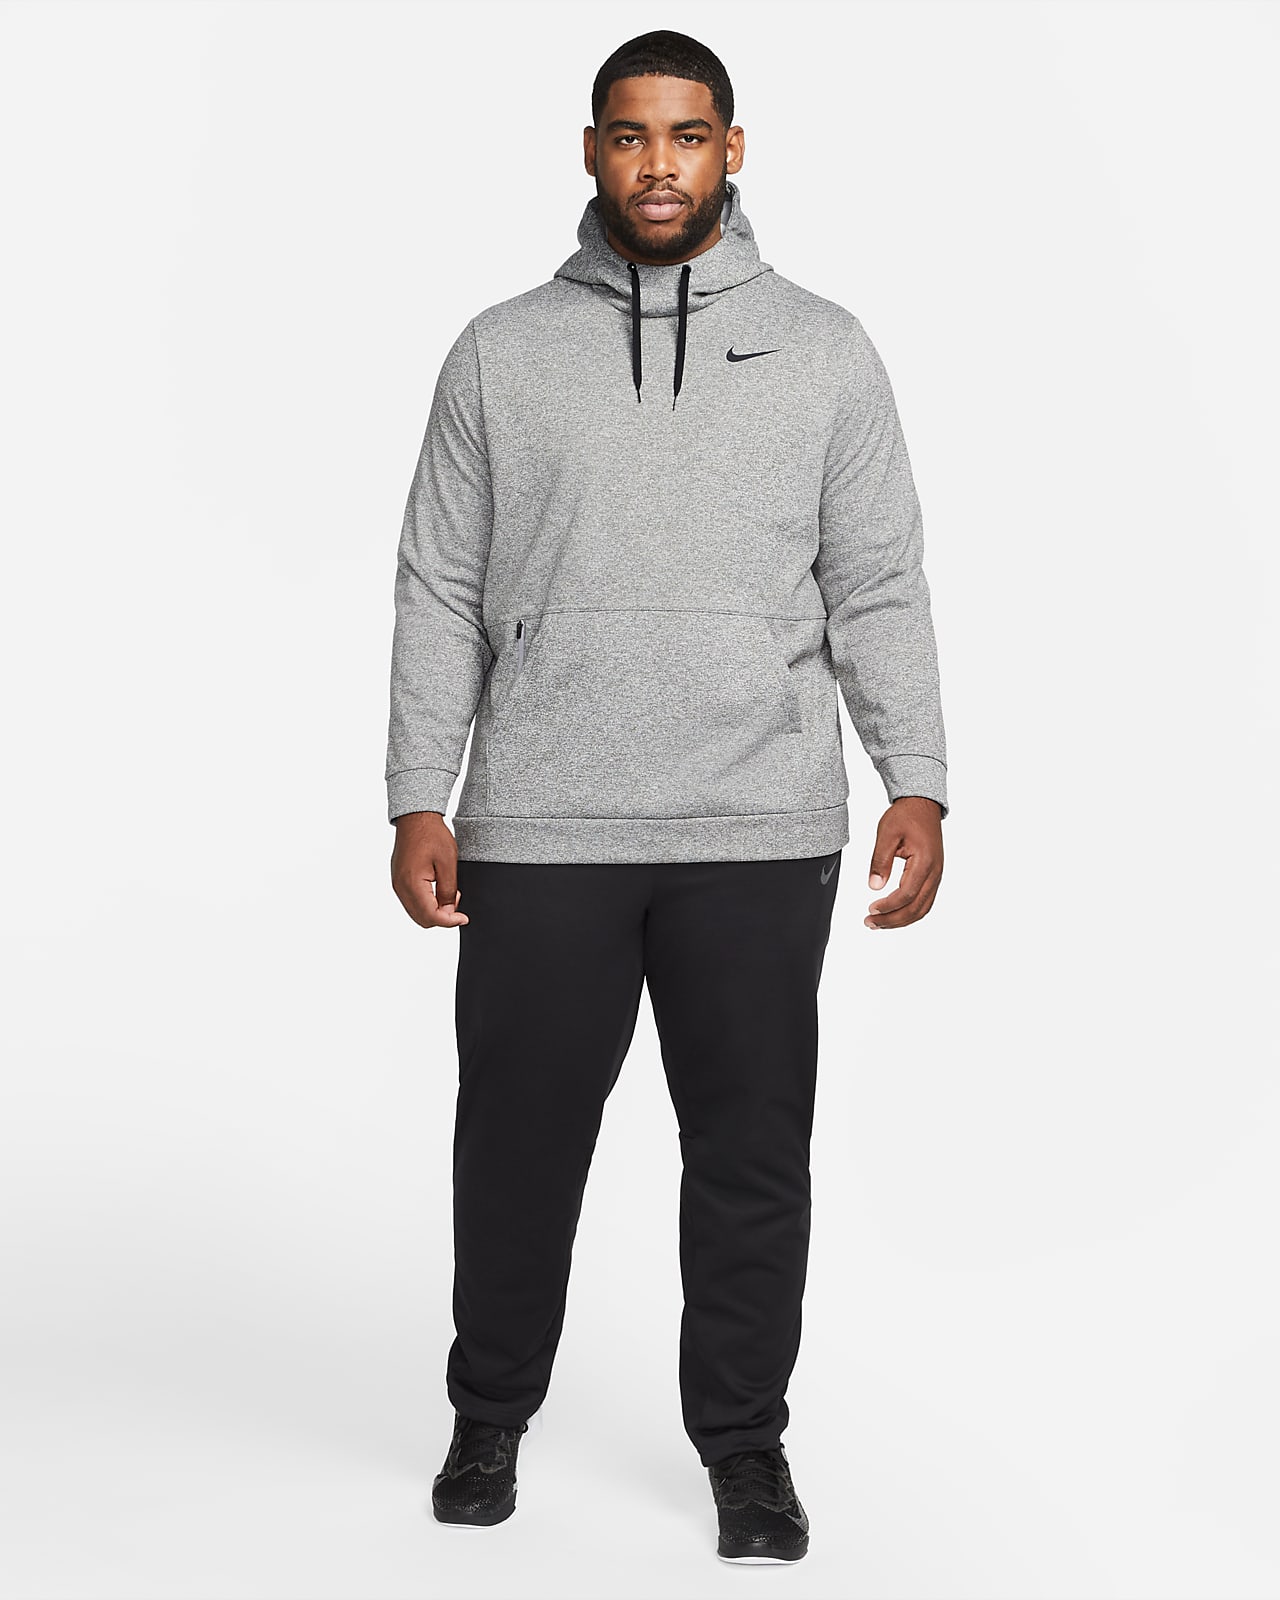 Pullover Training Hoodie. Nike 